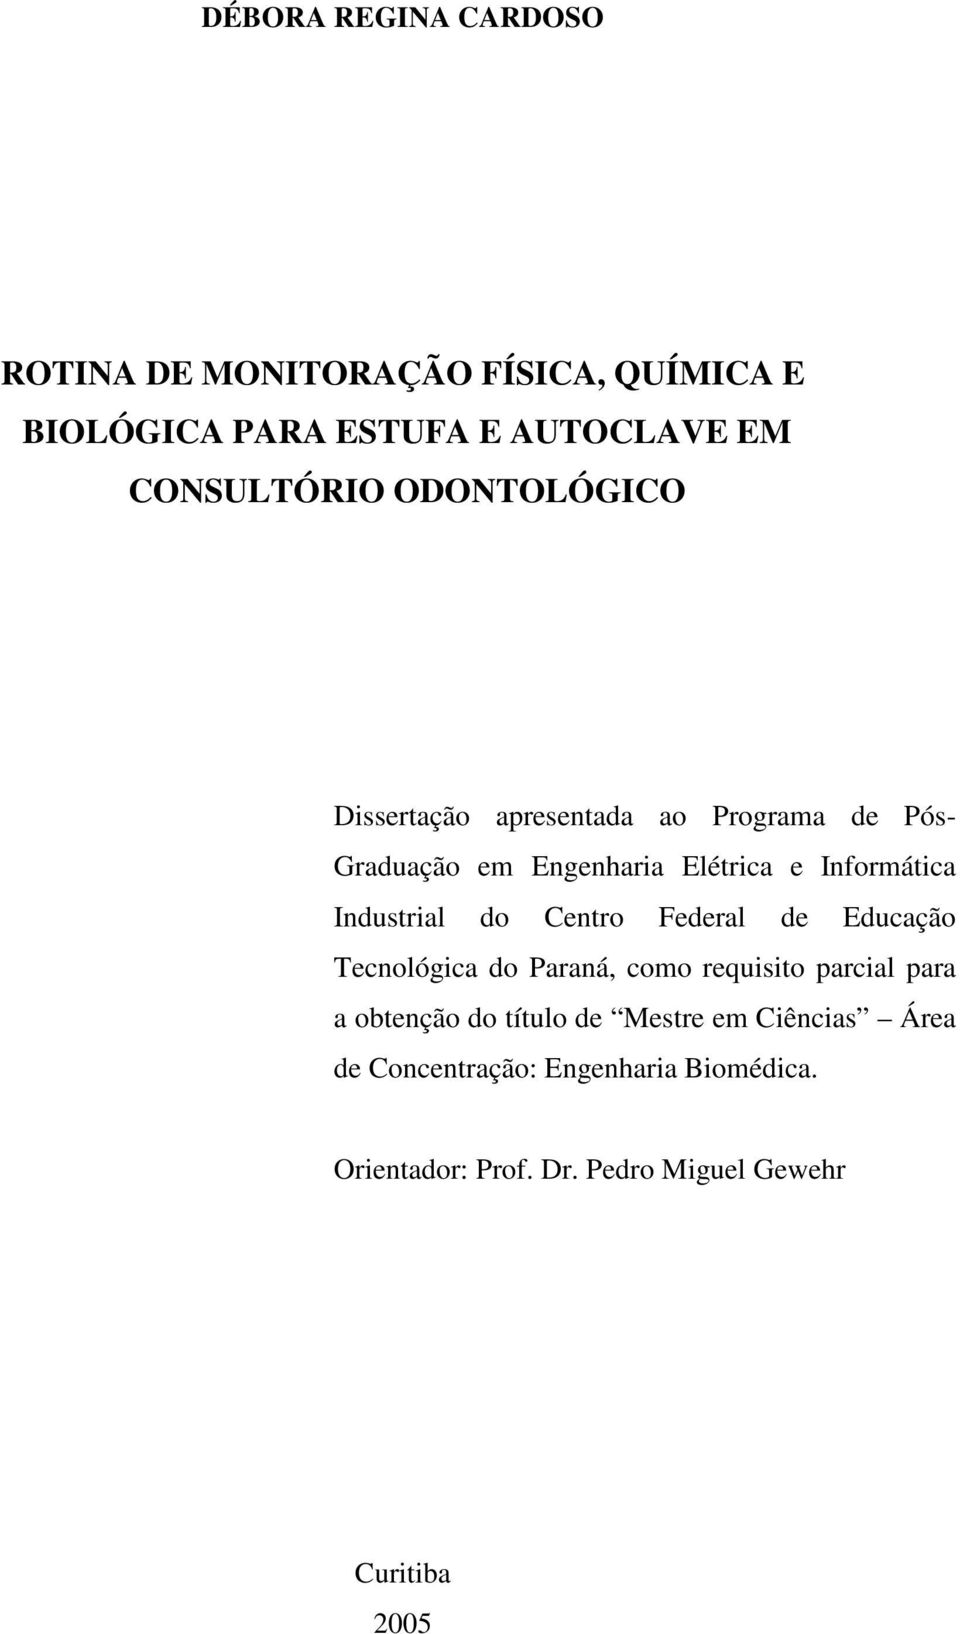 Industrial do Centro Federal de Educação Tecnológica do Paraná, como requisito parcial para a obtenção do título